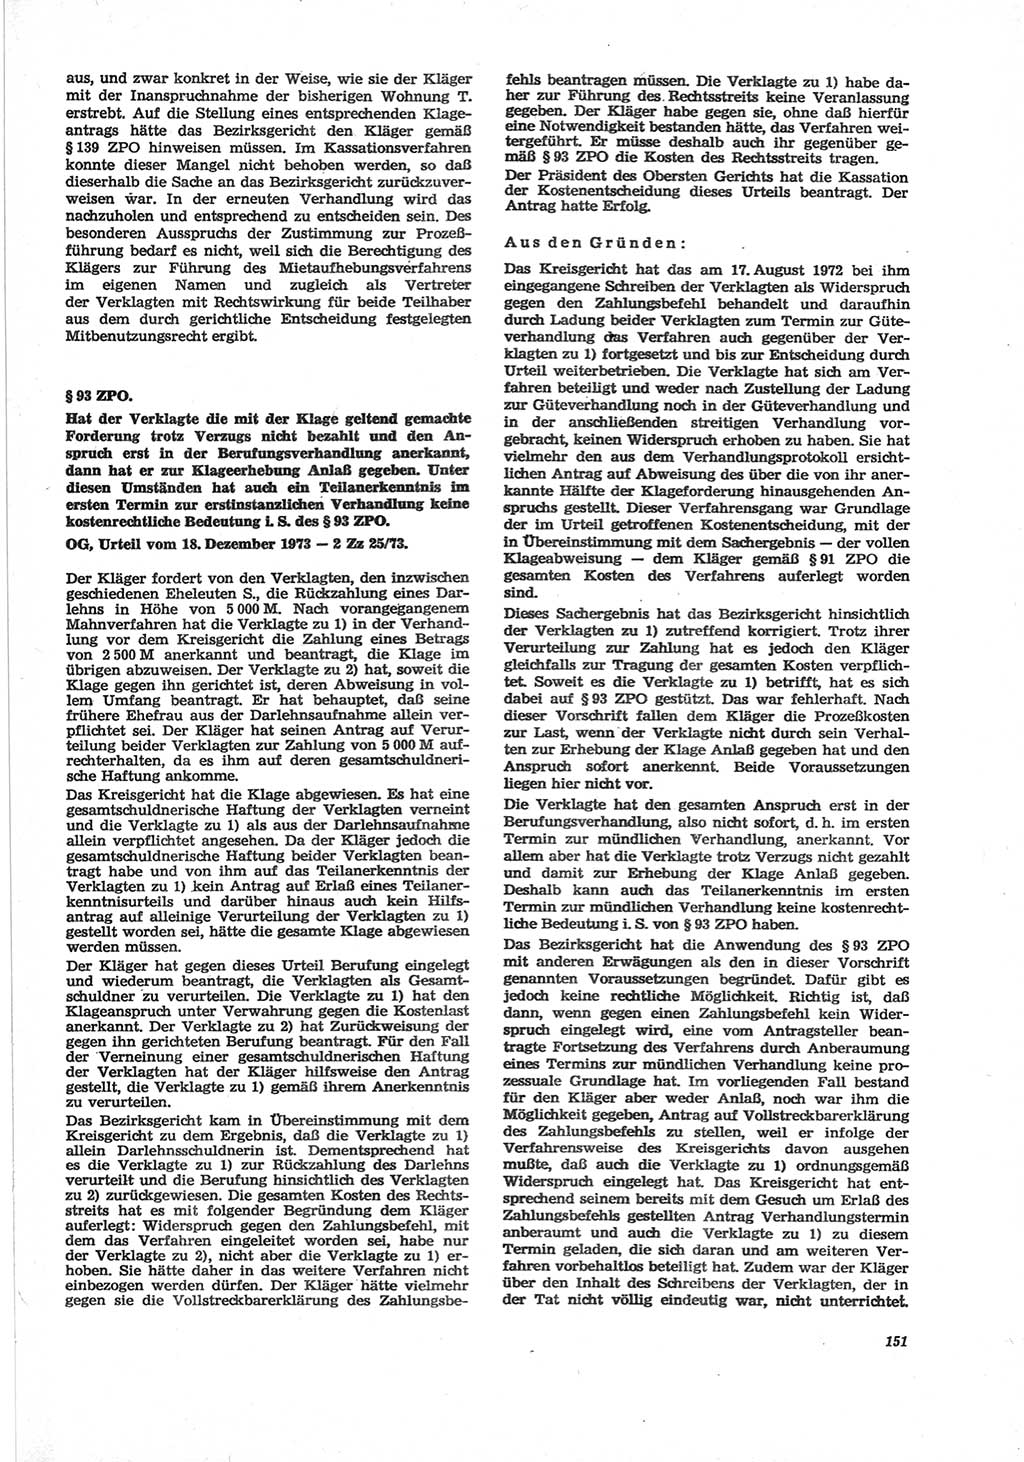 Neue Justiz (NJ), Zeitschrift für Recht und Rechtswissenschaft [Deutsche Demokratische Republik (DDR)], 28. Jahrgang 1974, Seite 151 (NJ DDR 1974, S. 151)